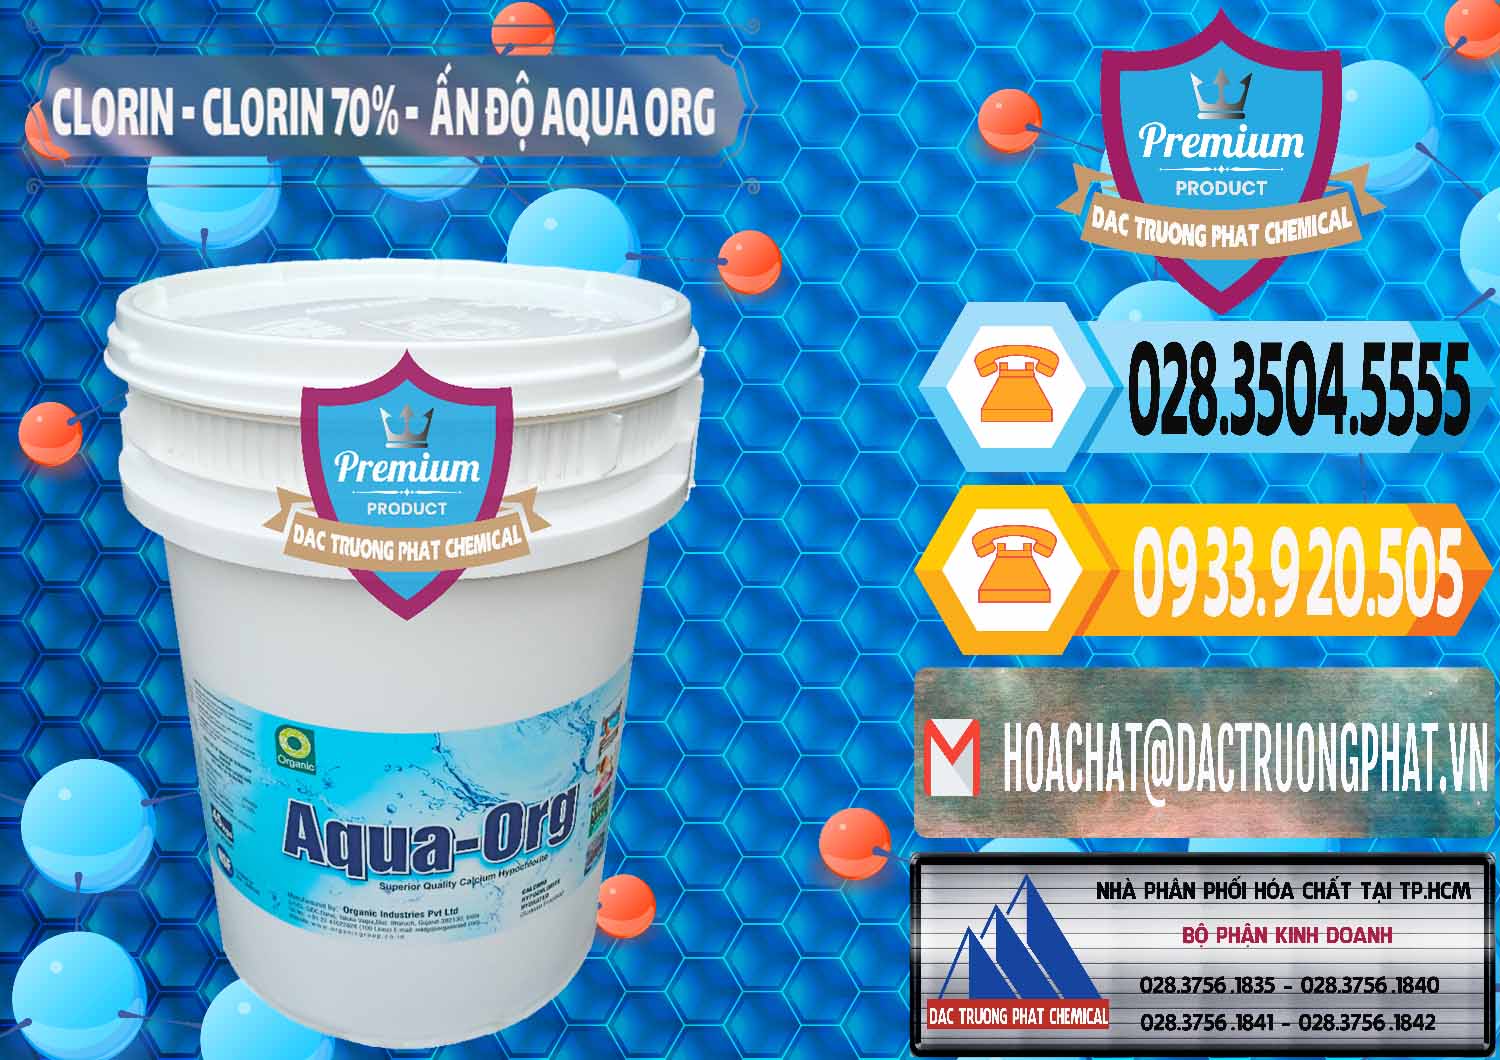 Công ty bán - cung ứng Chlorine – Clorin Ấn Độ Aqua ORG Organic India - 0051 - Cty chuyên bán - phân phối hóa chất tại TP.HCM - hoachattayrua.net